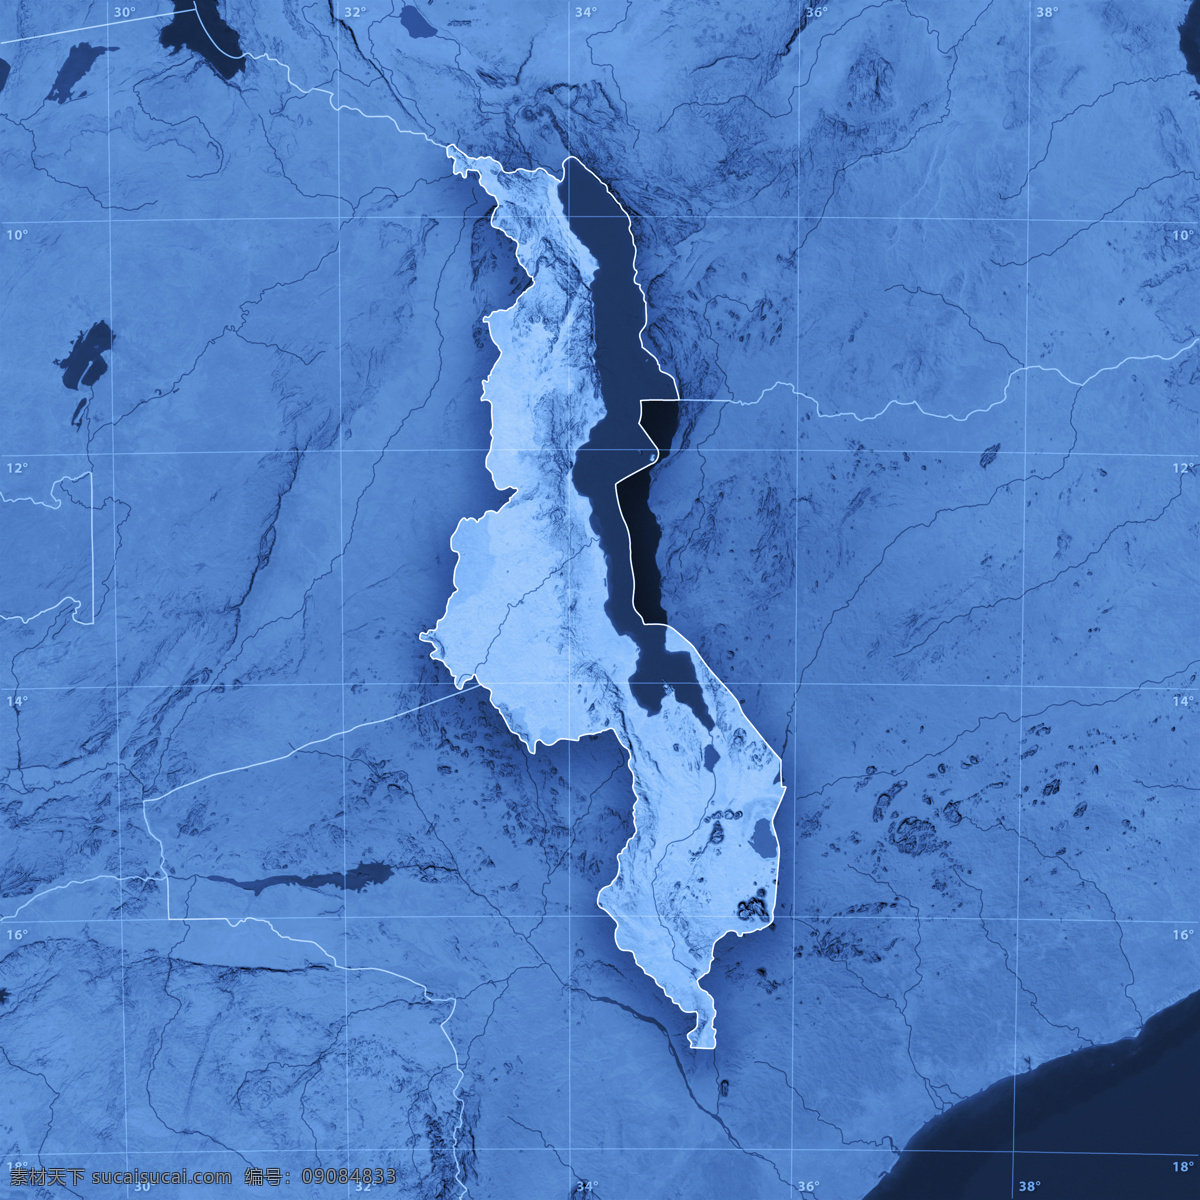 蓝色地图背景 地图 地理坐标 蓝色地图 其他类别 生活百科